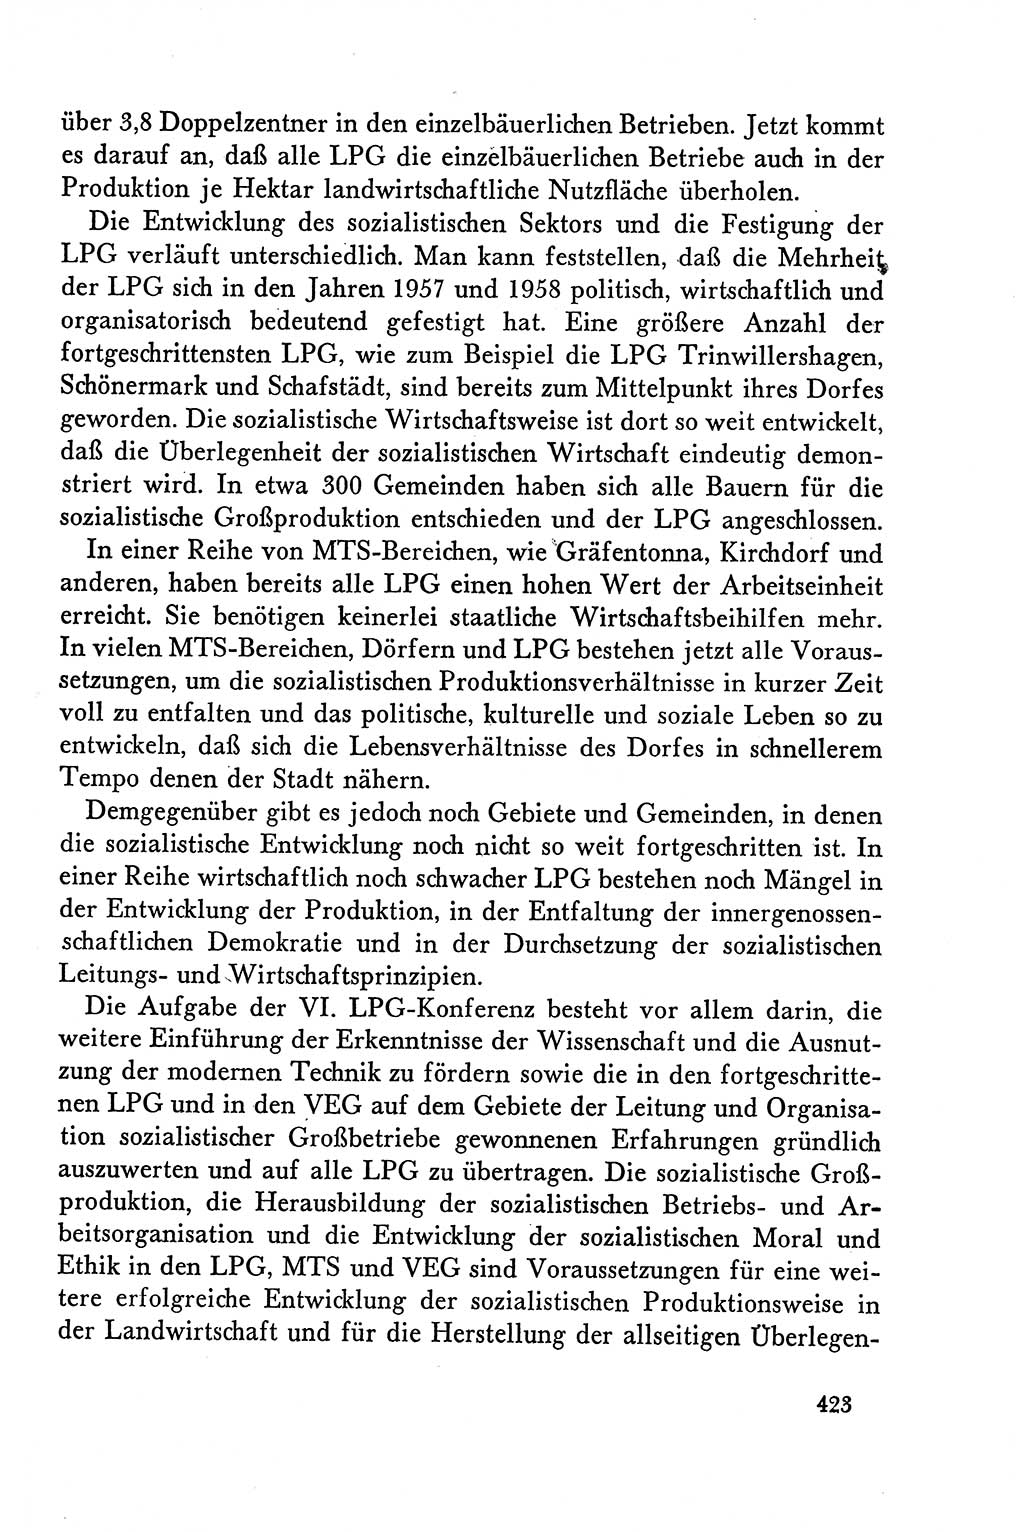 Dokumente der Sozialistischen Einheitspartei Deutschlands (SED) [Deutsche Demokratische Republik (DDR)] 1958-1959, Seite 423 (Dok. SED DDR 1958-1959, S. 423)